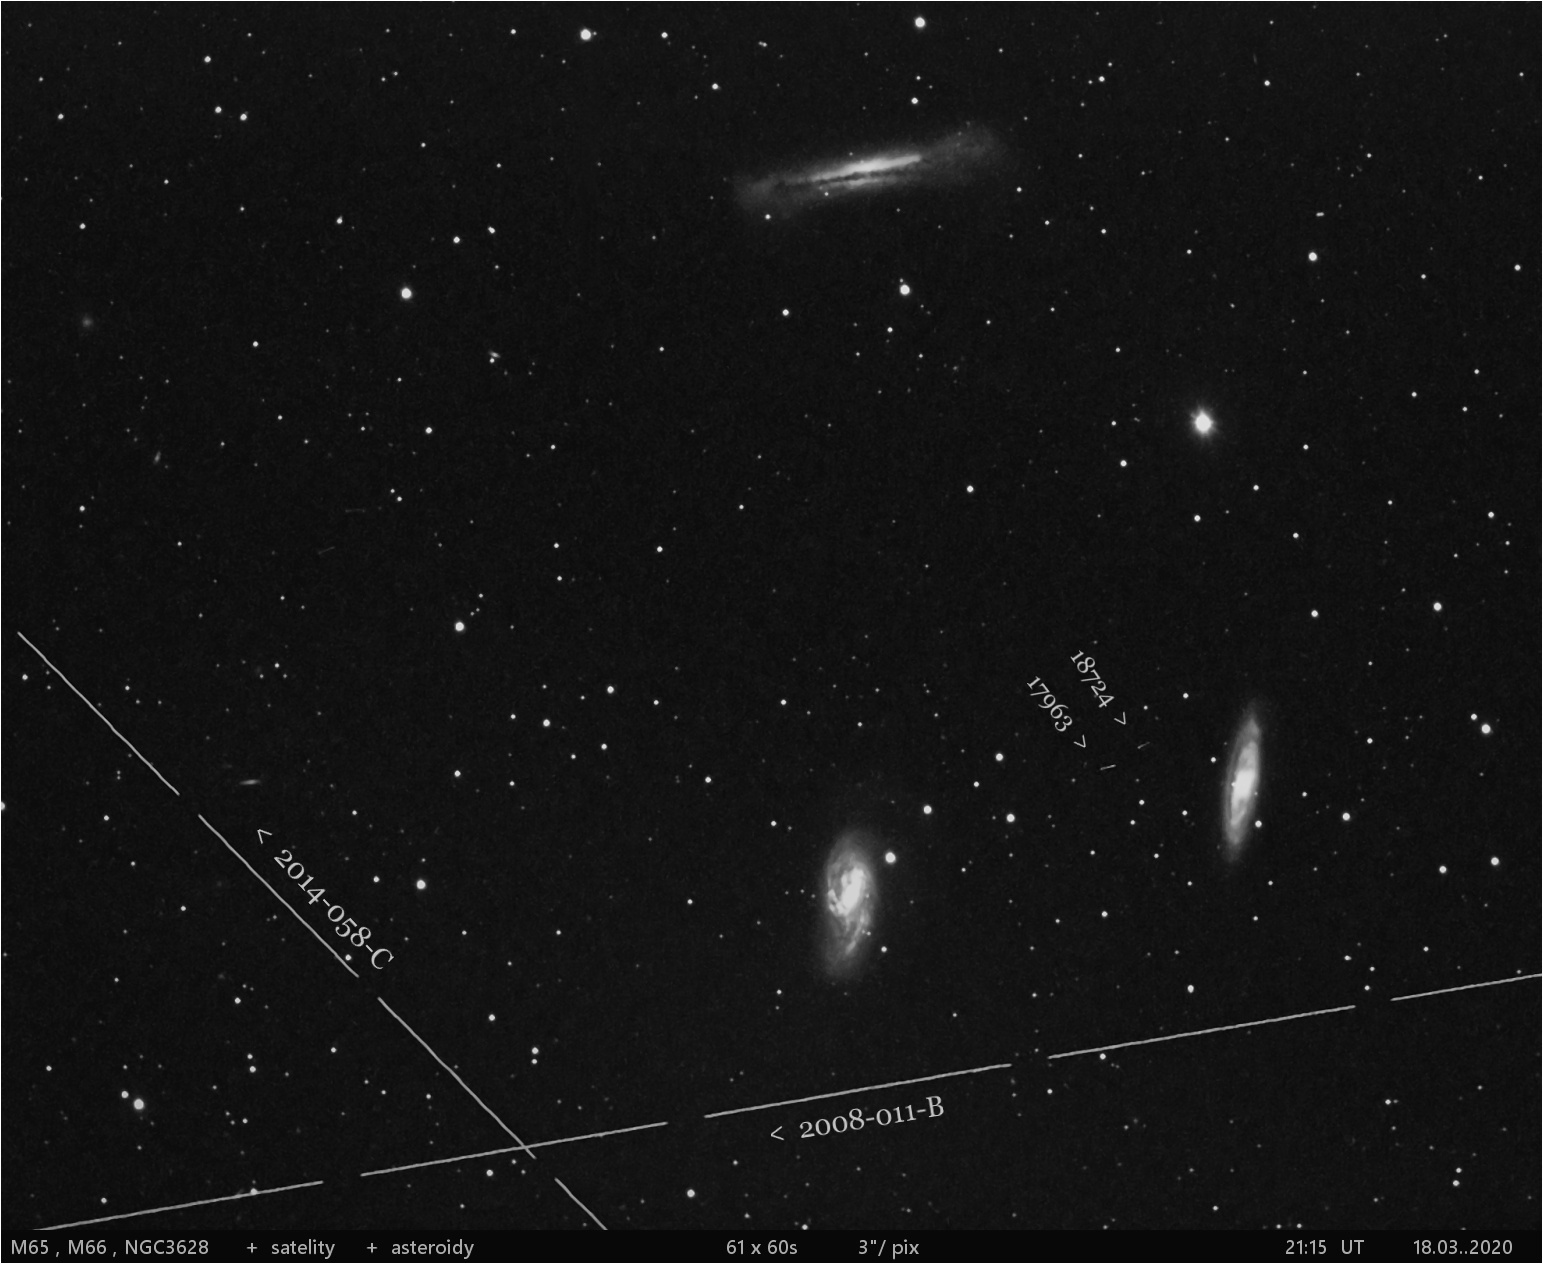 M65 + asteroidy + satelity